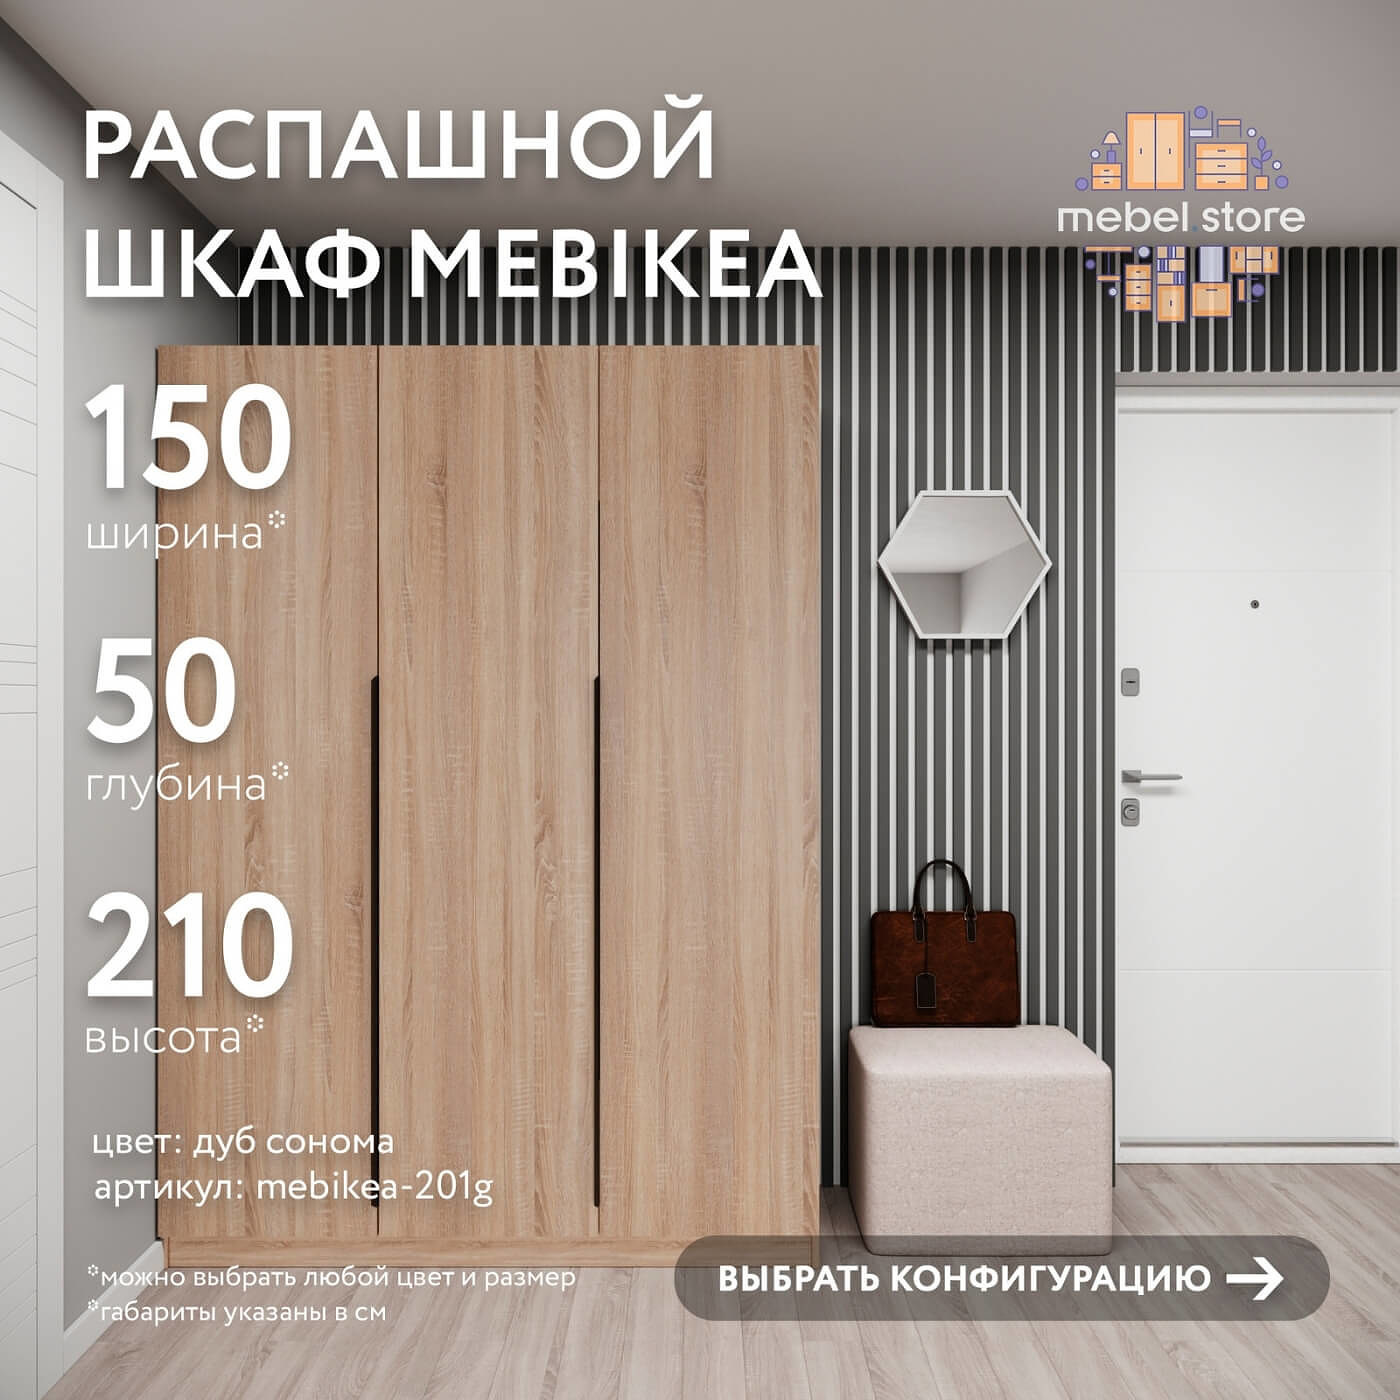 Шкаф Mebikea-201g минимализм для прихожей и спальни - фото 1 large